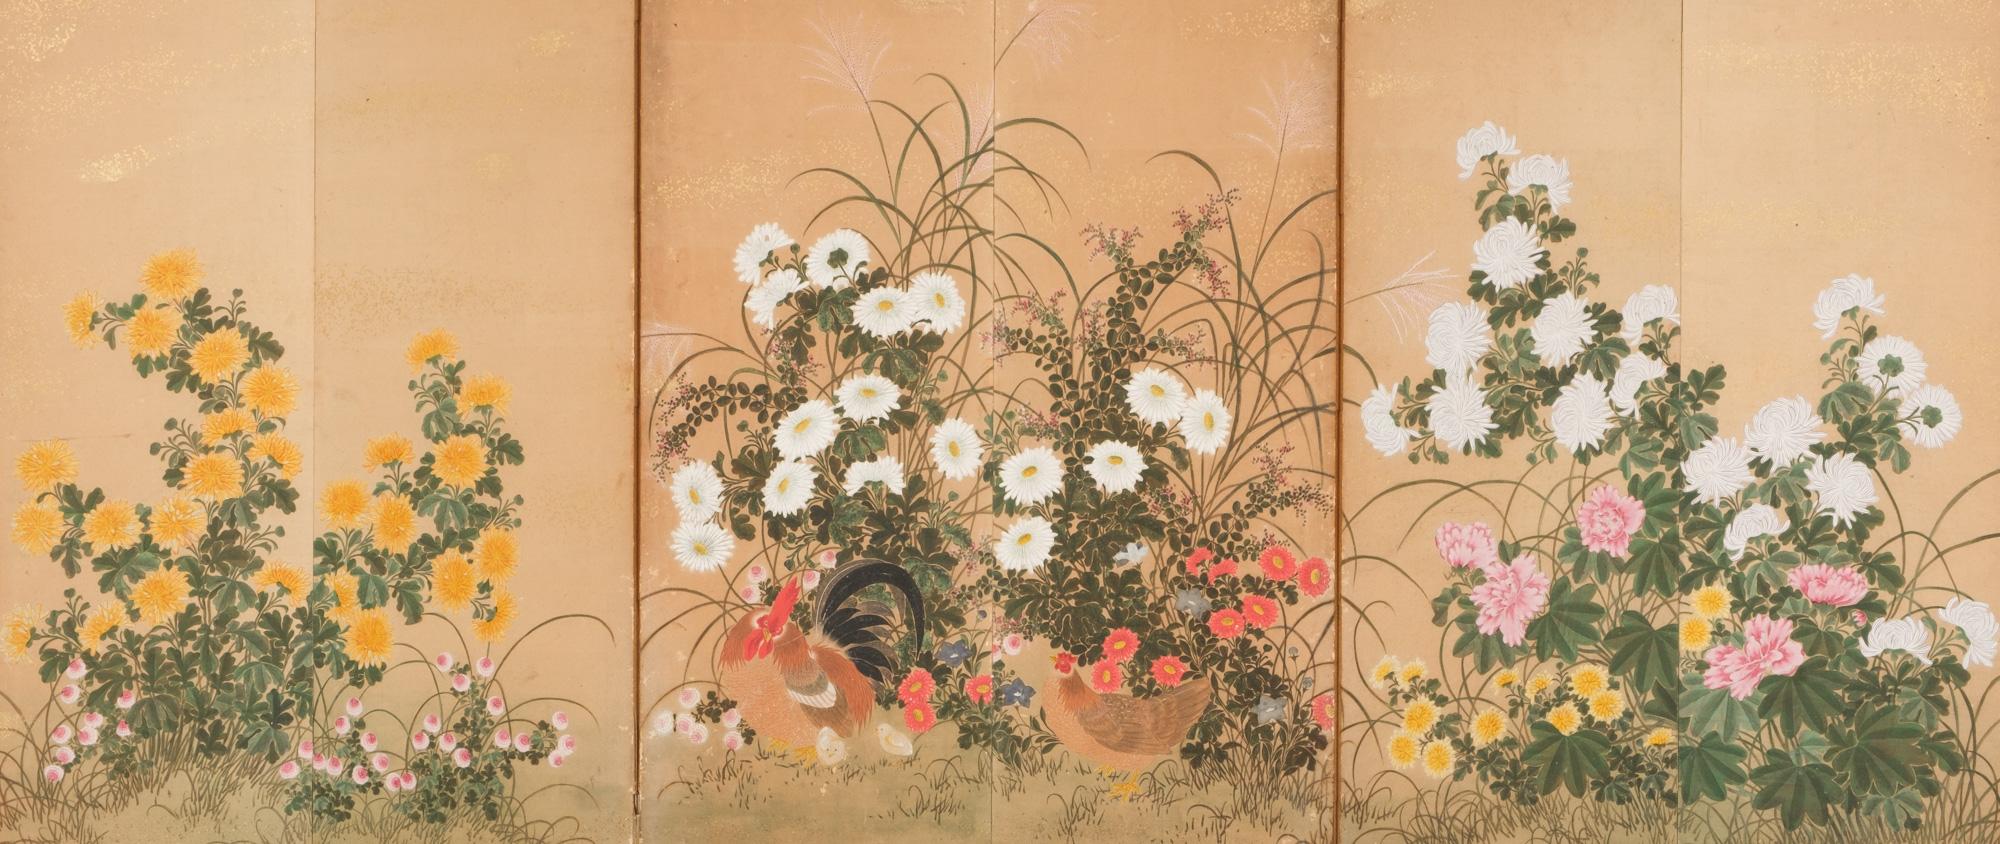 Ein bezaubernder, mittelgroßer, sechspassiger Byôbu (Paravent) mit einer lebhaften, polychromen Malerei eines Hahns mit seiner Familie inmitten eines üppigen Blumengartens.

Der Garten ist mit allen möglichen blühenden Blumen gefüllt, wie